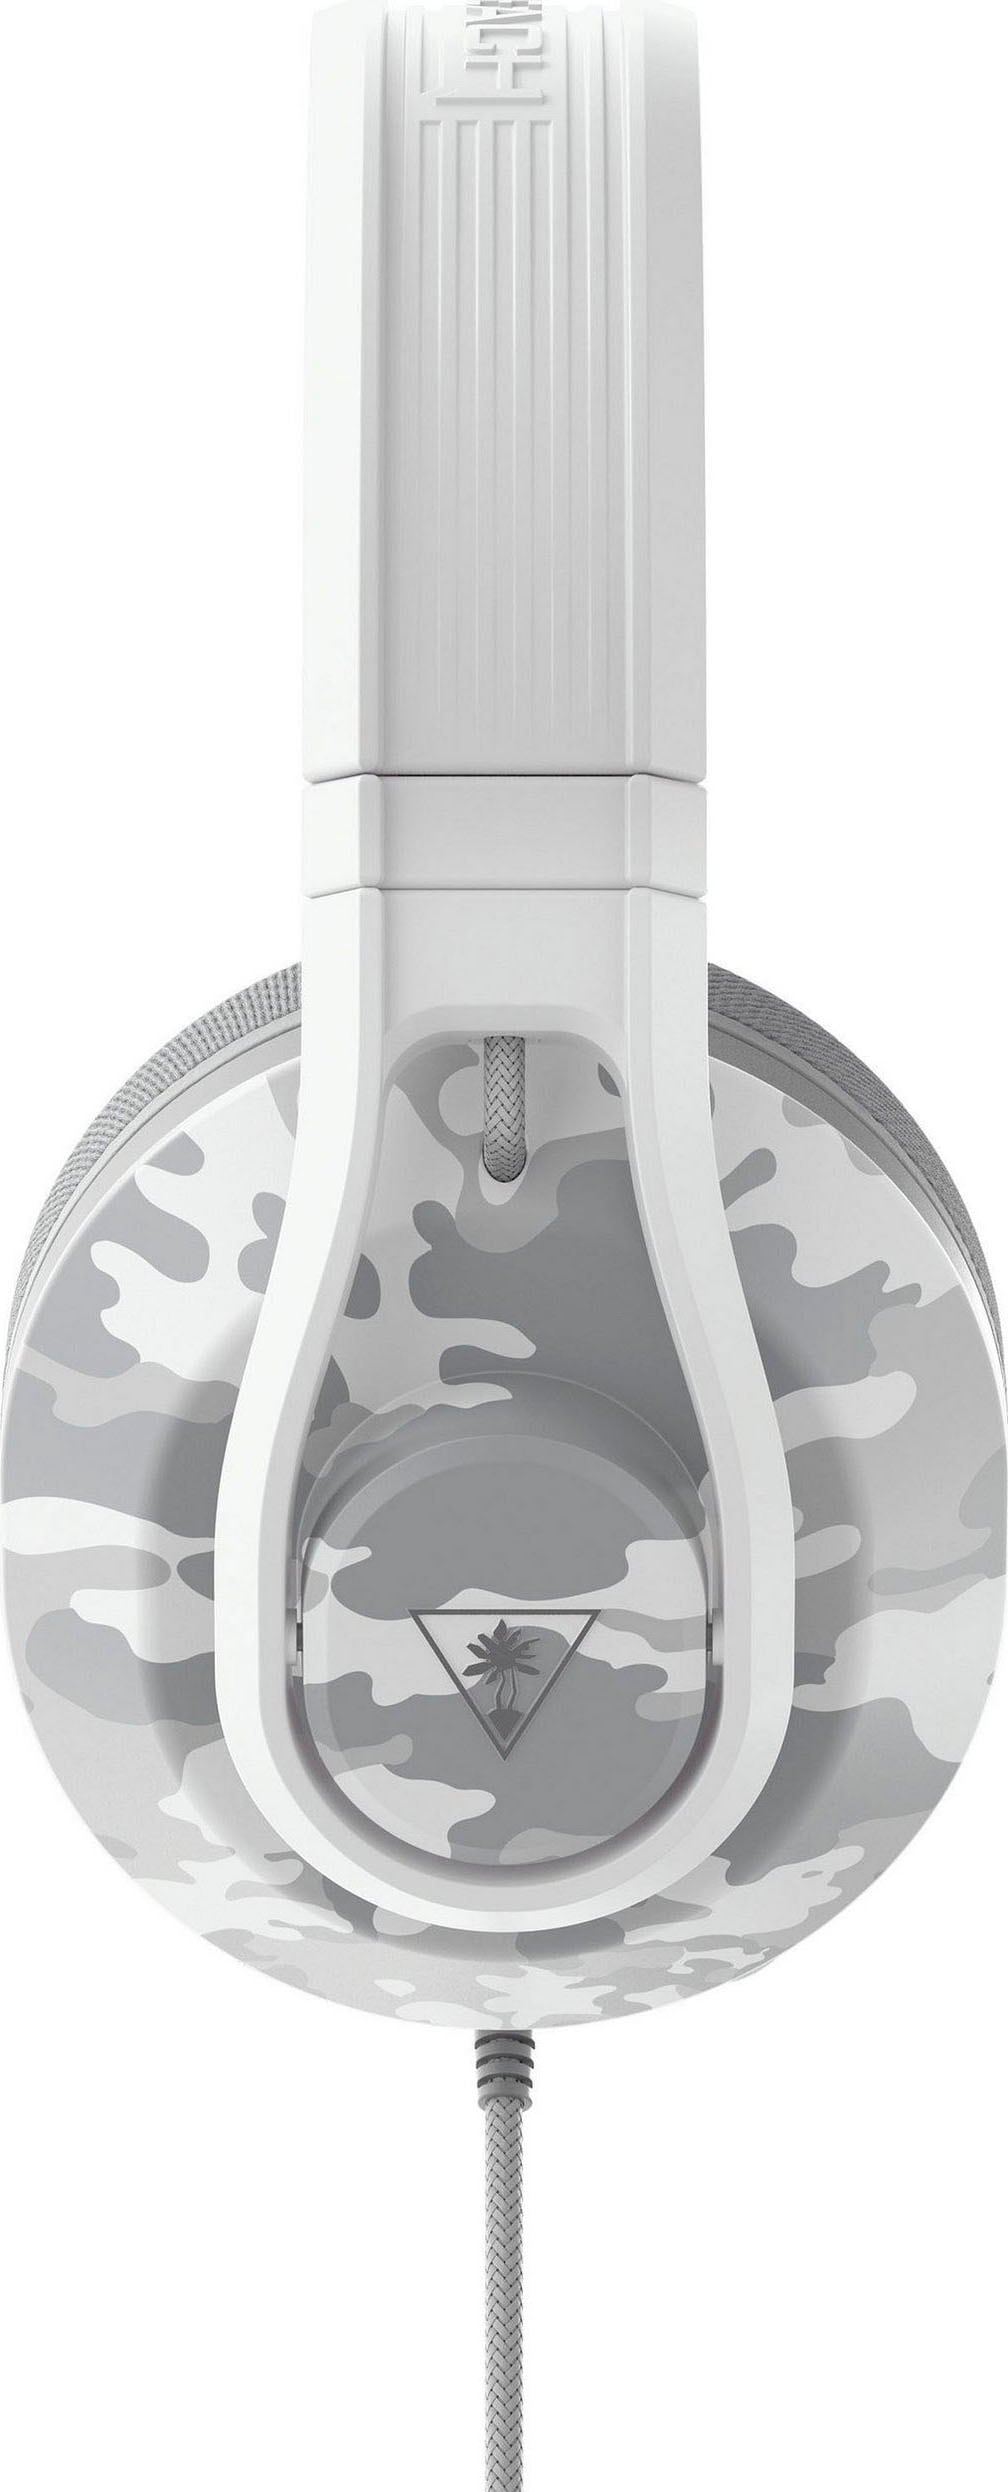 Turtle Beach Gaming-Headset »Recon 500 White«, Mikrofon abnehmbar